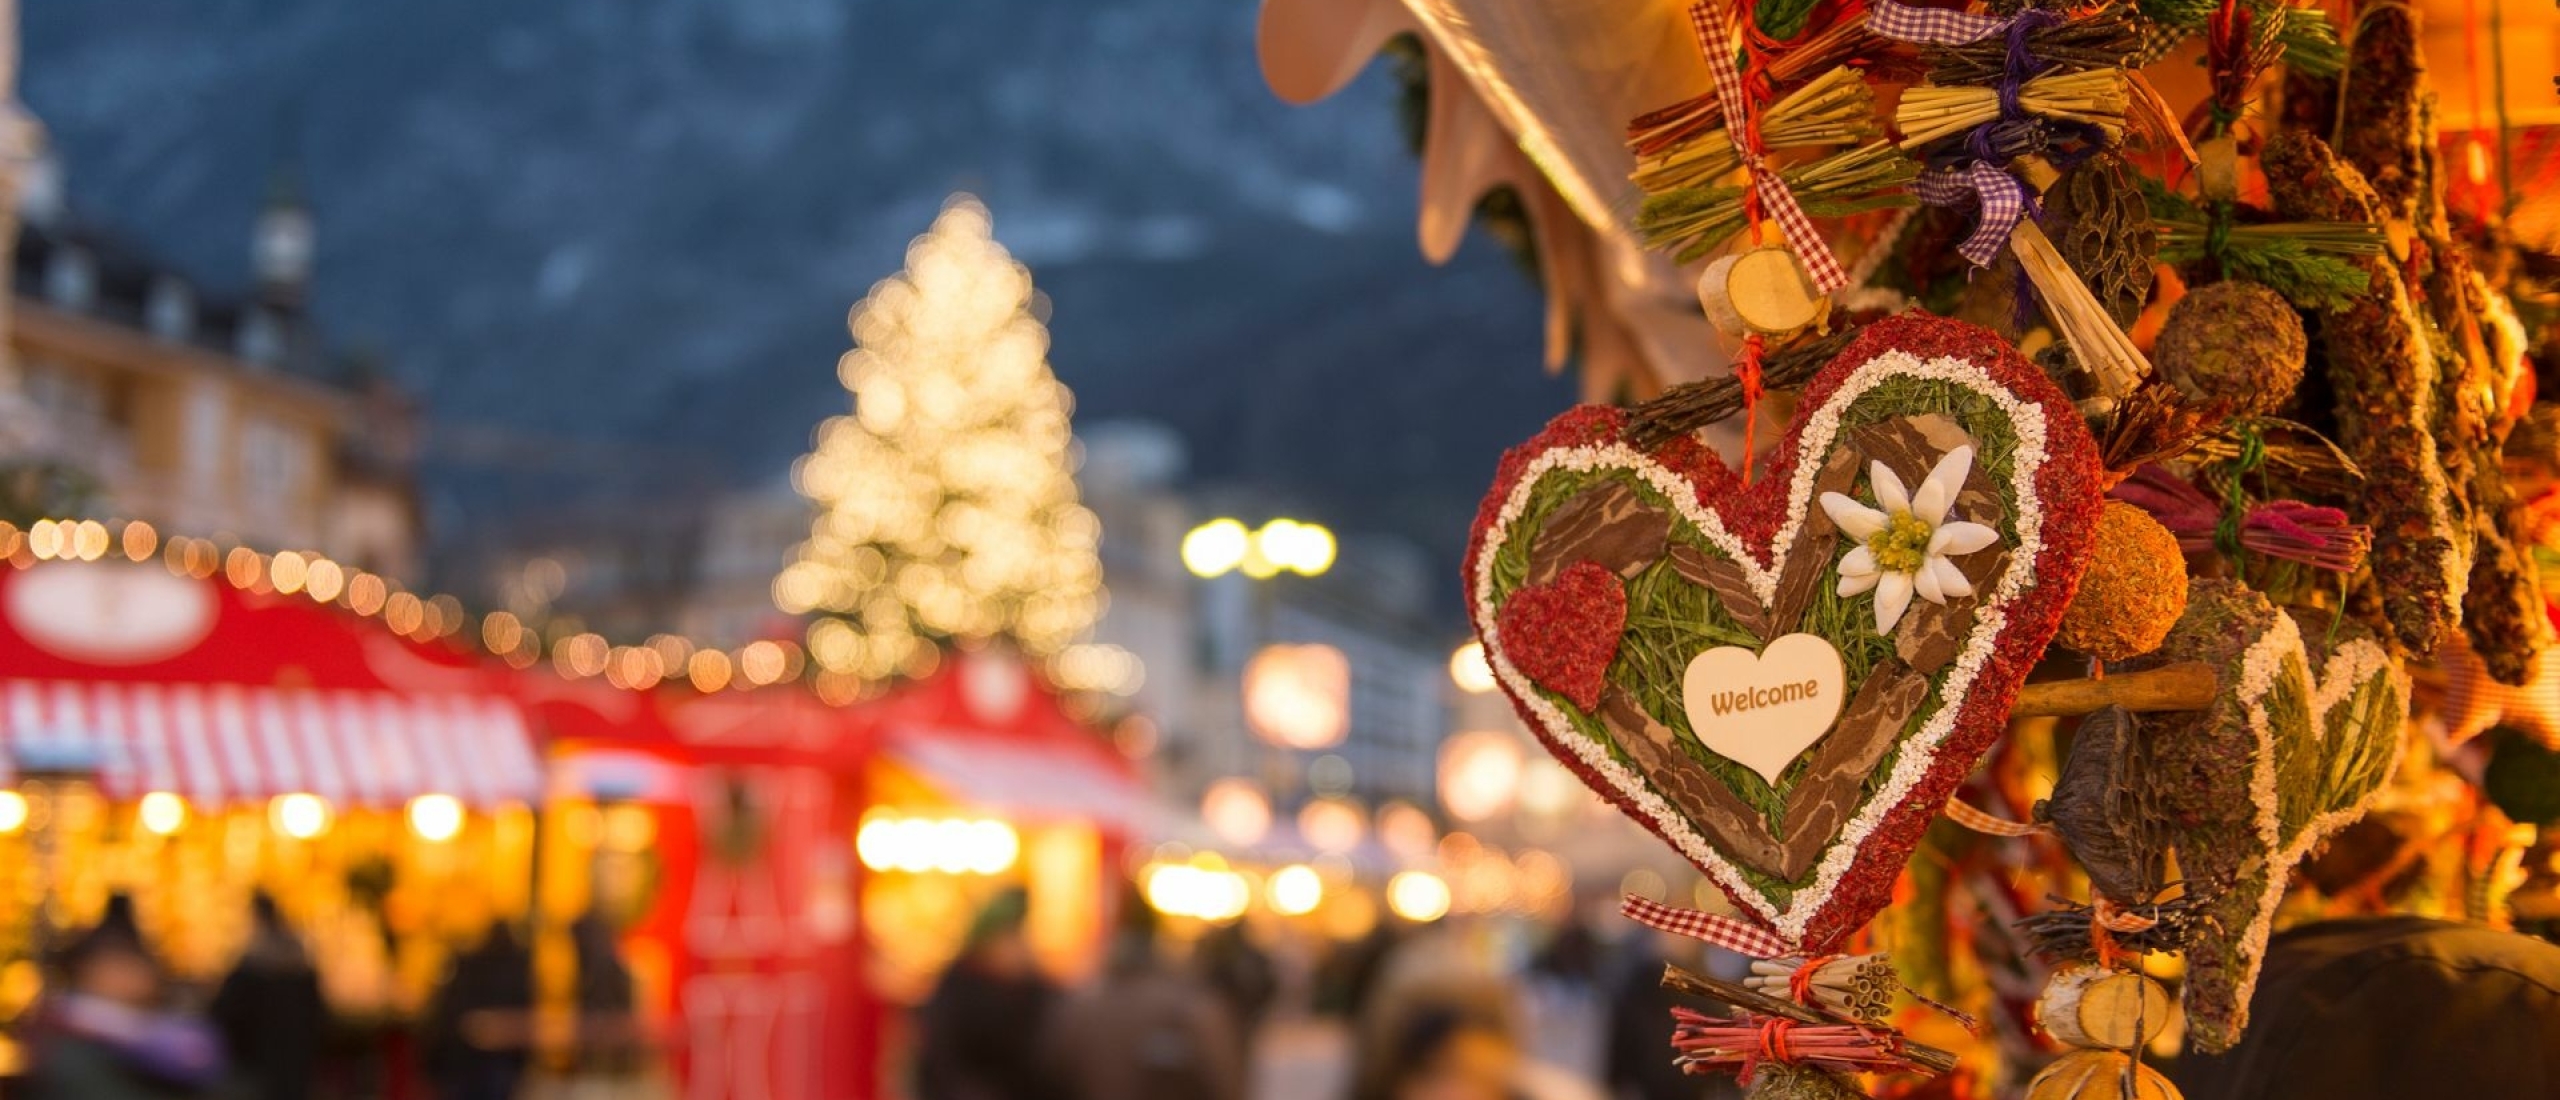 Kerstmarkt Duitsland: de top 5 die de moeite waard zijn!